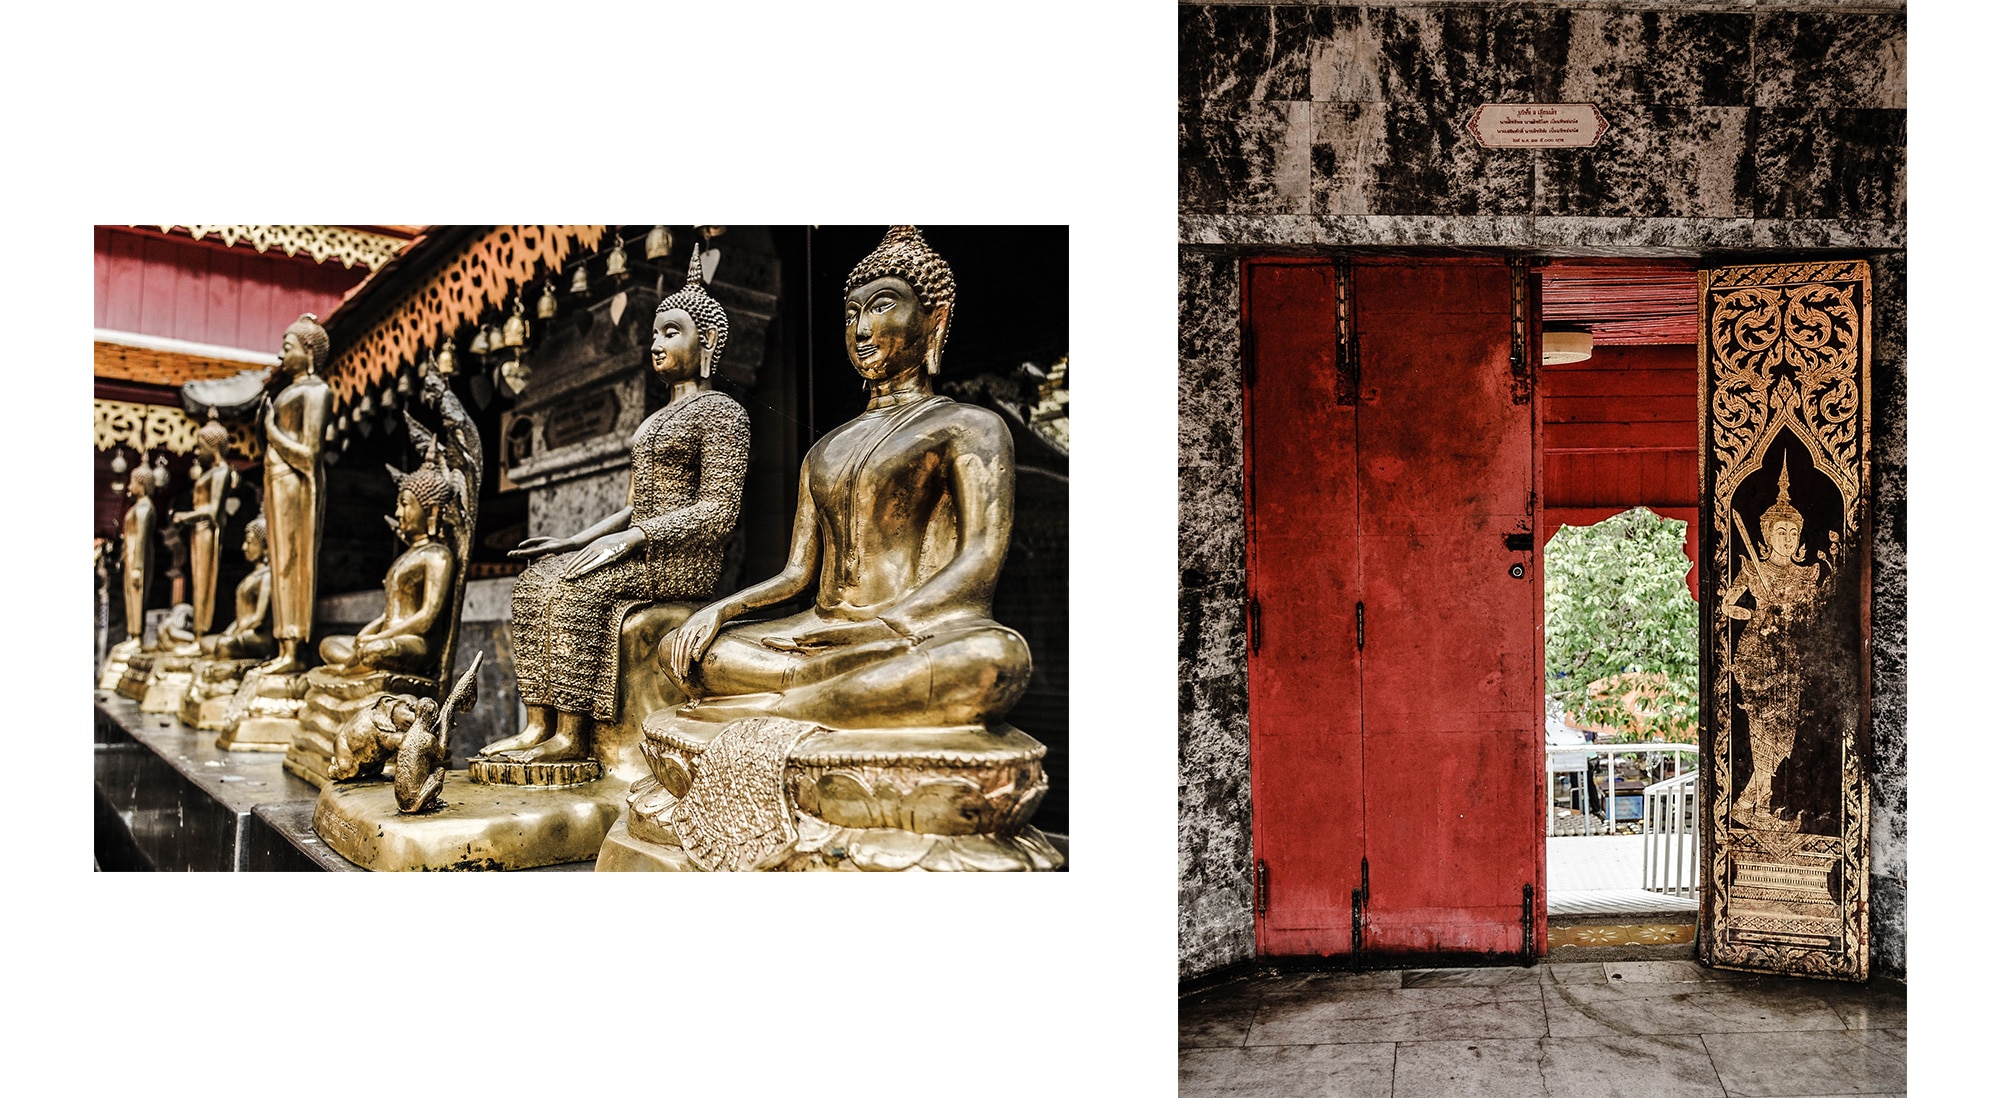 Le Wat Doi Suthep en Thaïlande